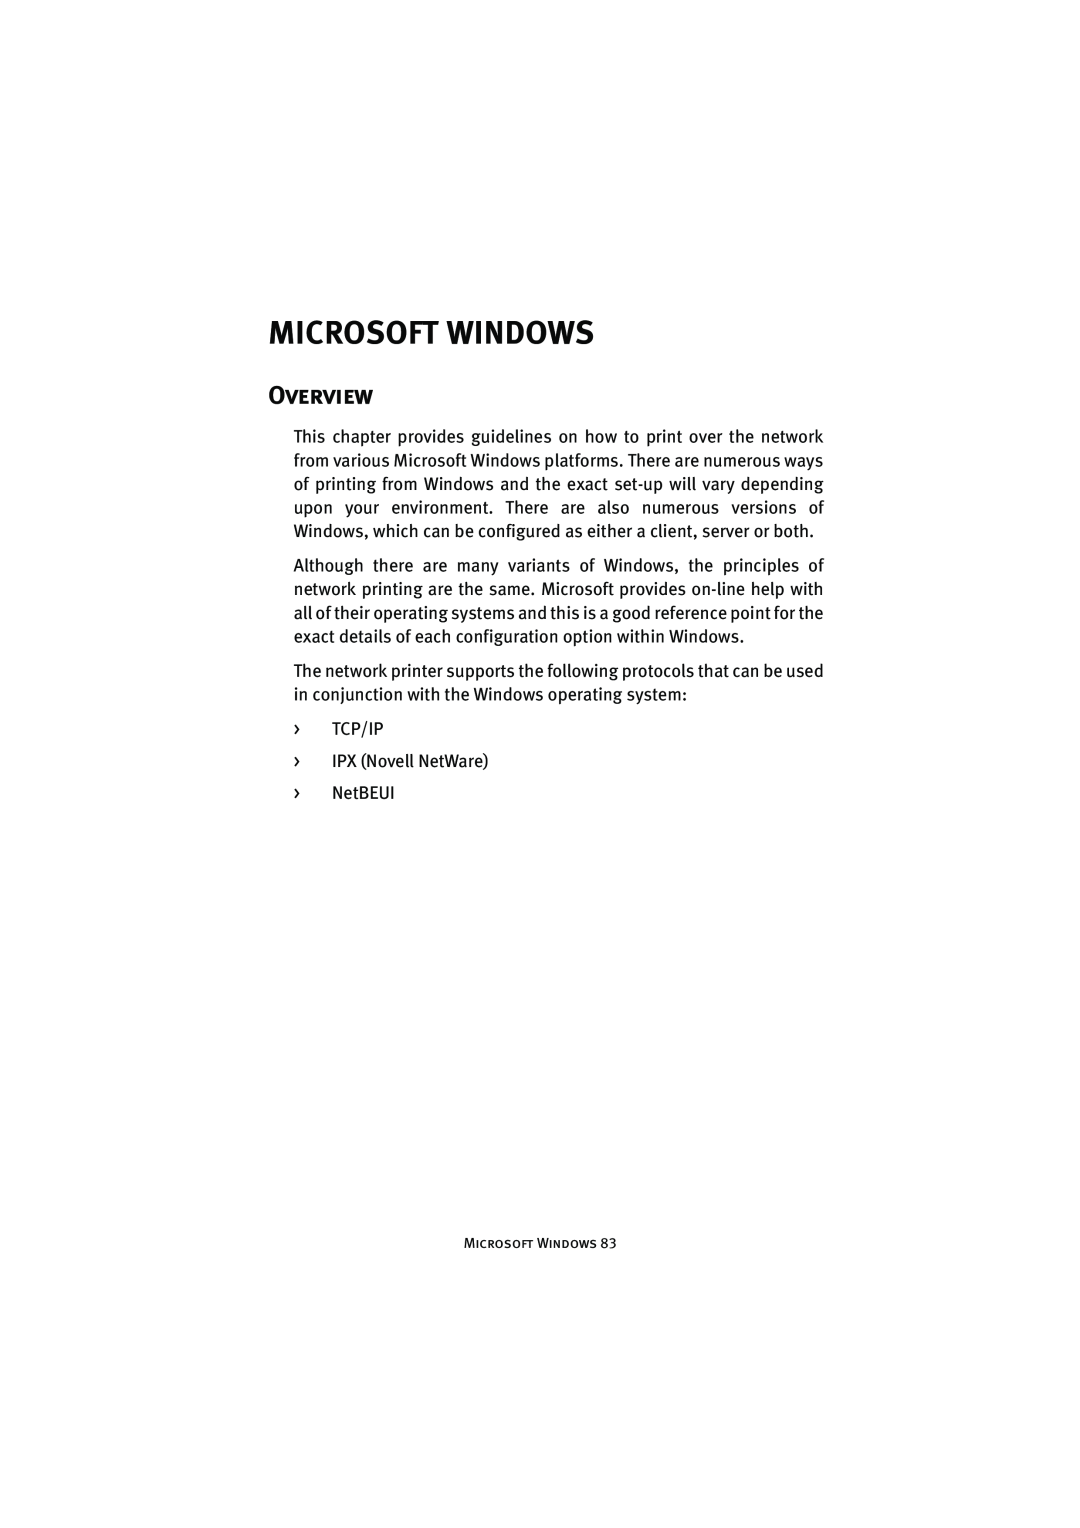 Oki 7300e manual Microsoft Windows, Overview 